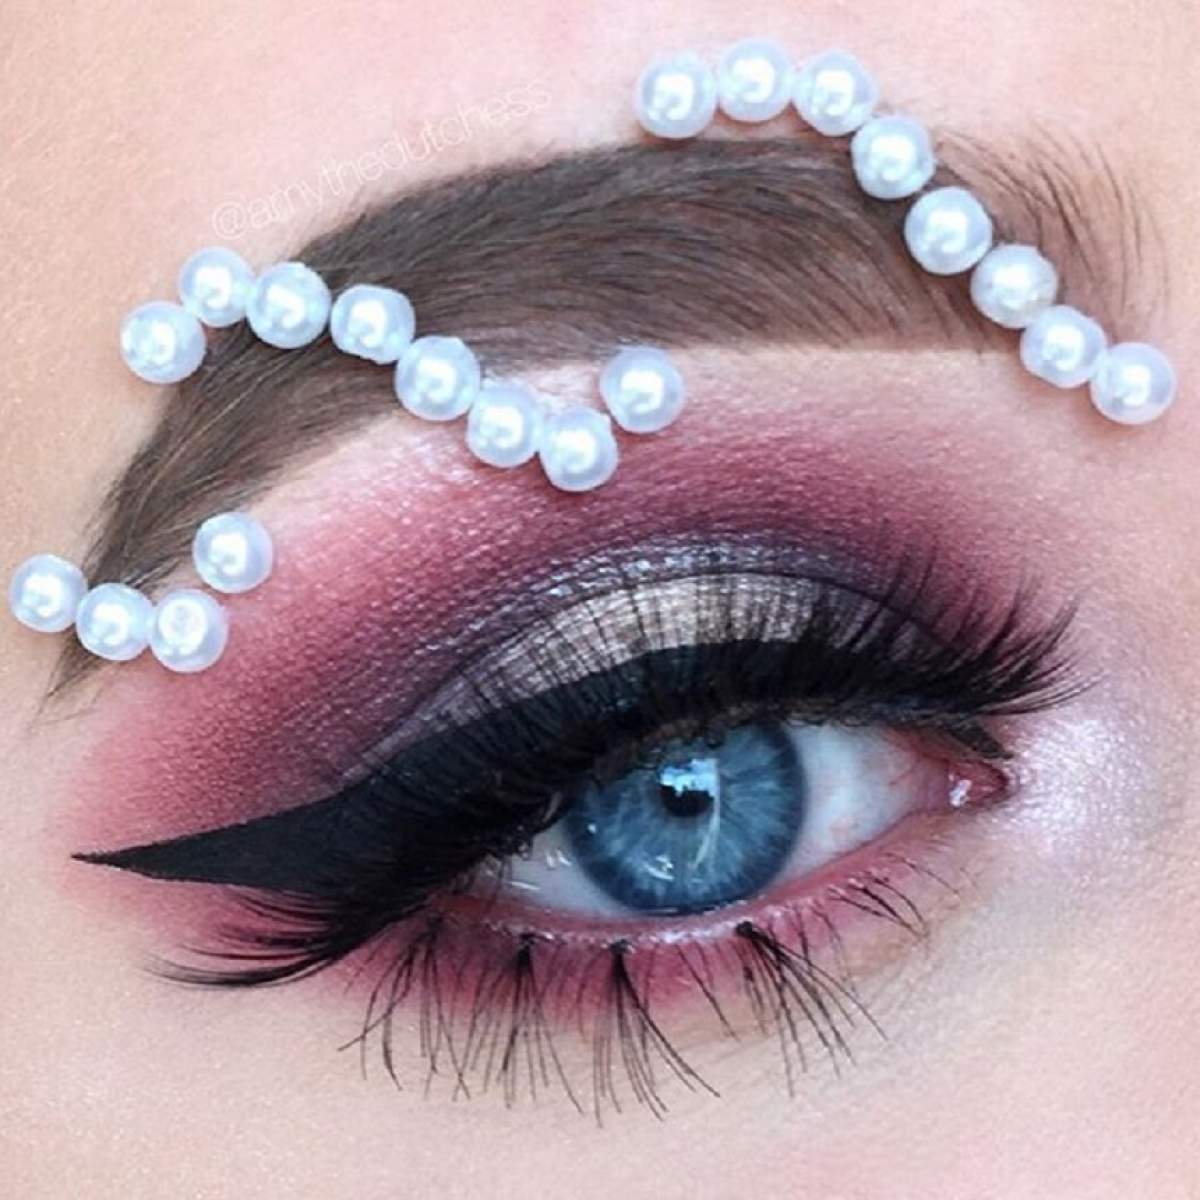 FOTO / Machiajul cu ţinte şi perle! Noul trend în materie de makeup care face furori pe internet